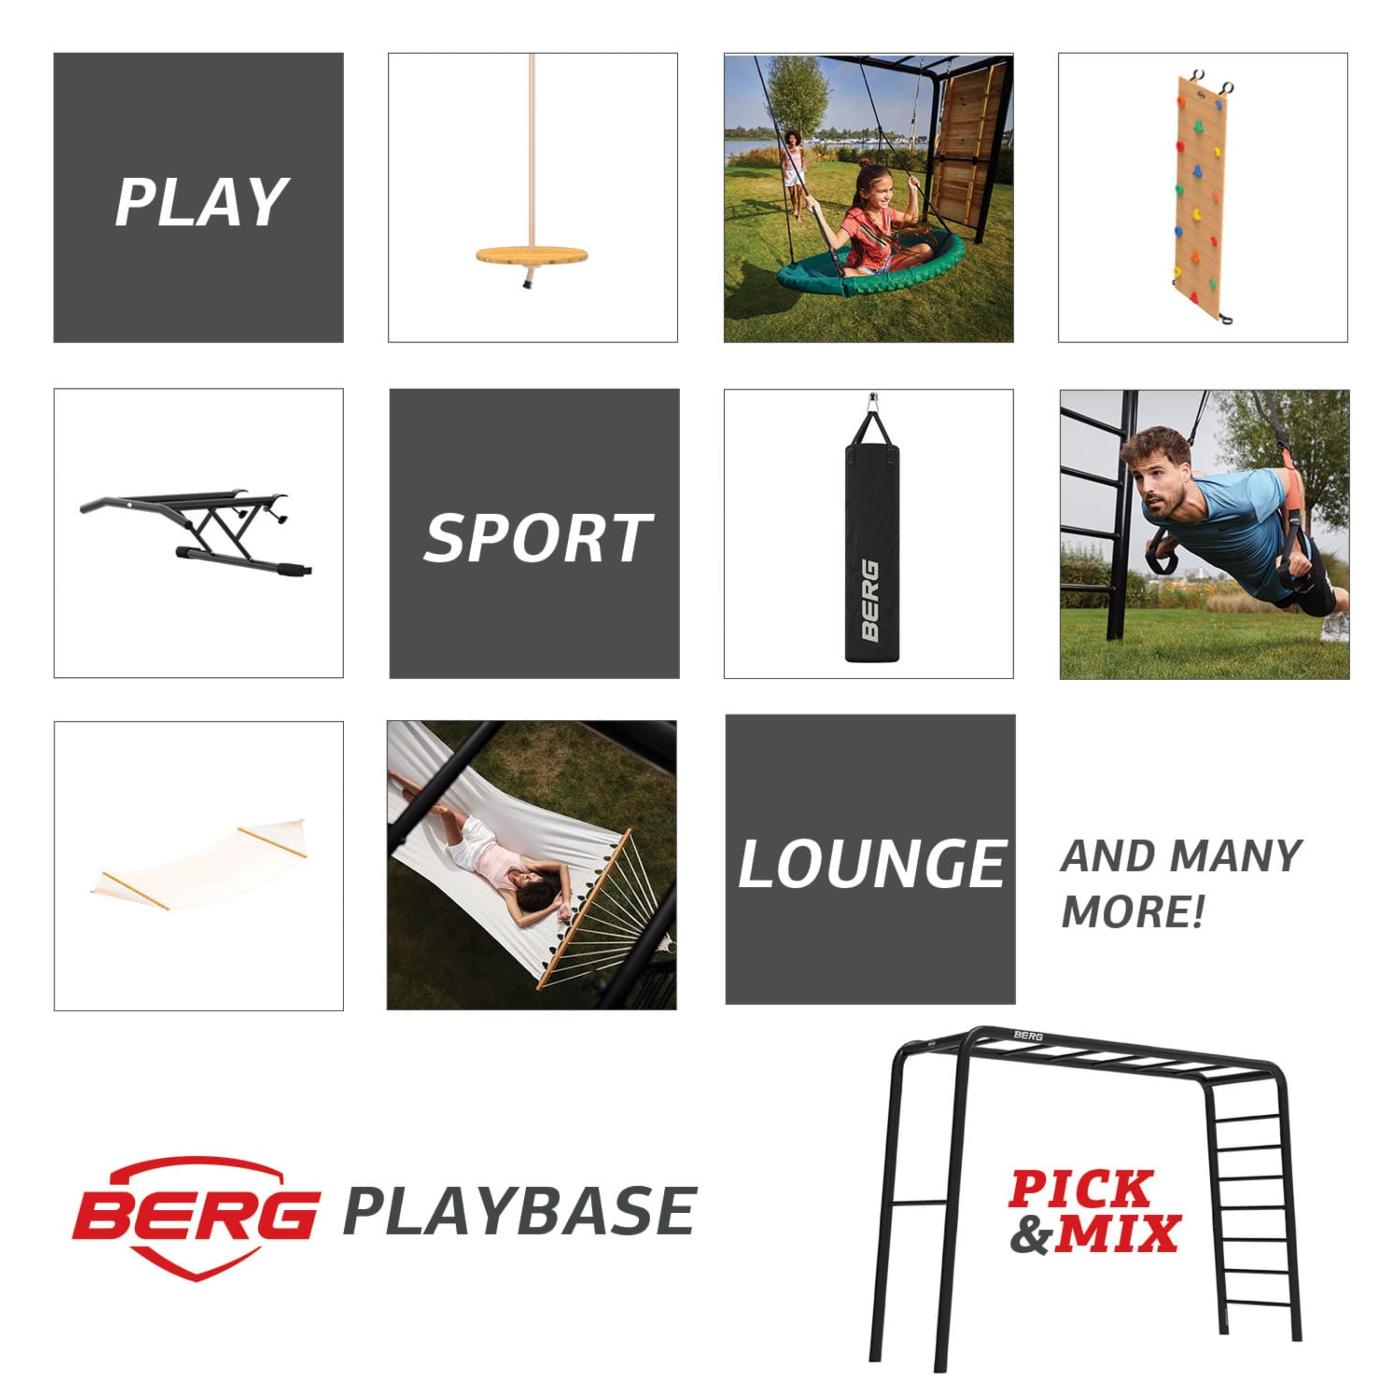  Parc metàl·lic BERG Playbase jugar , fer esport, descansar per a tota la família